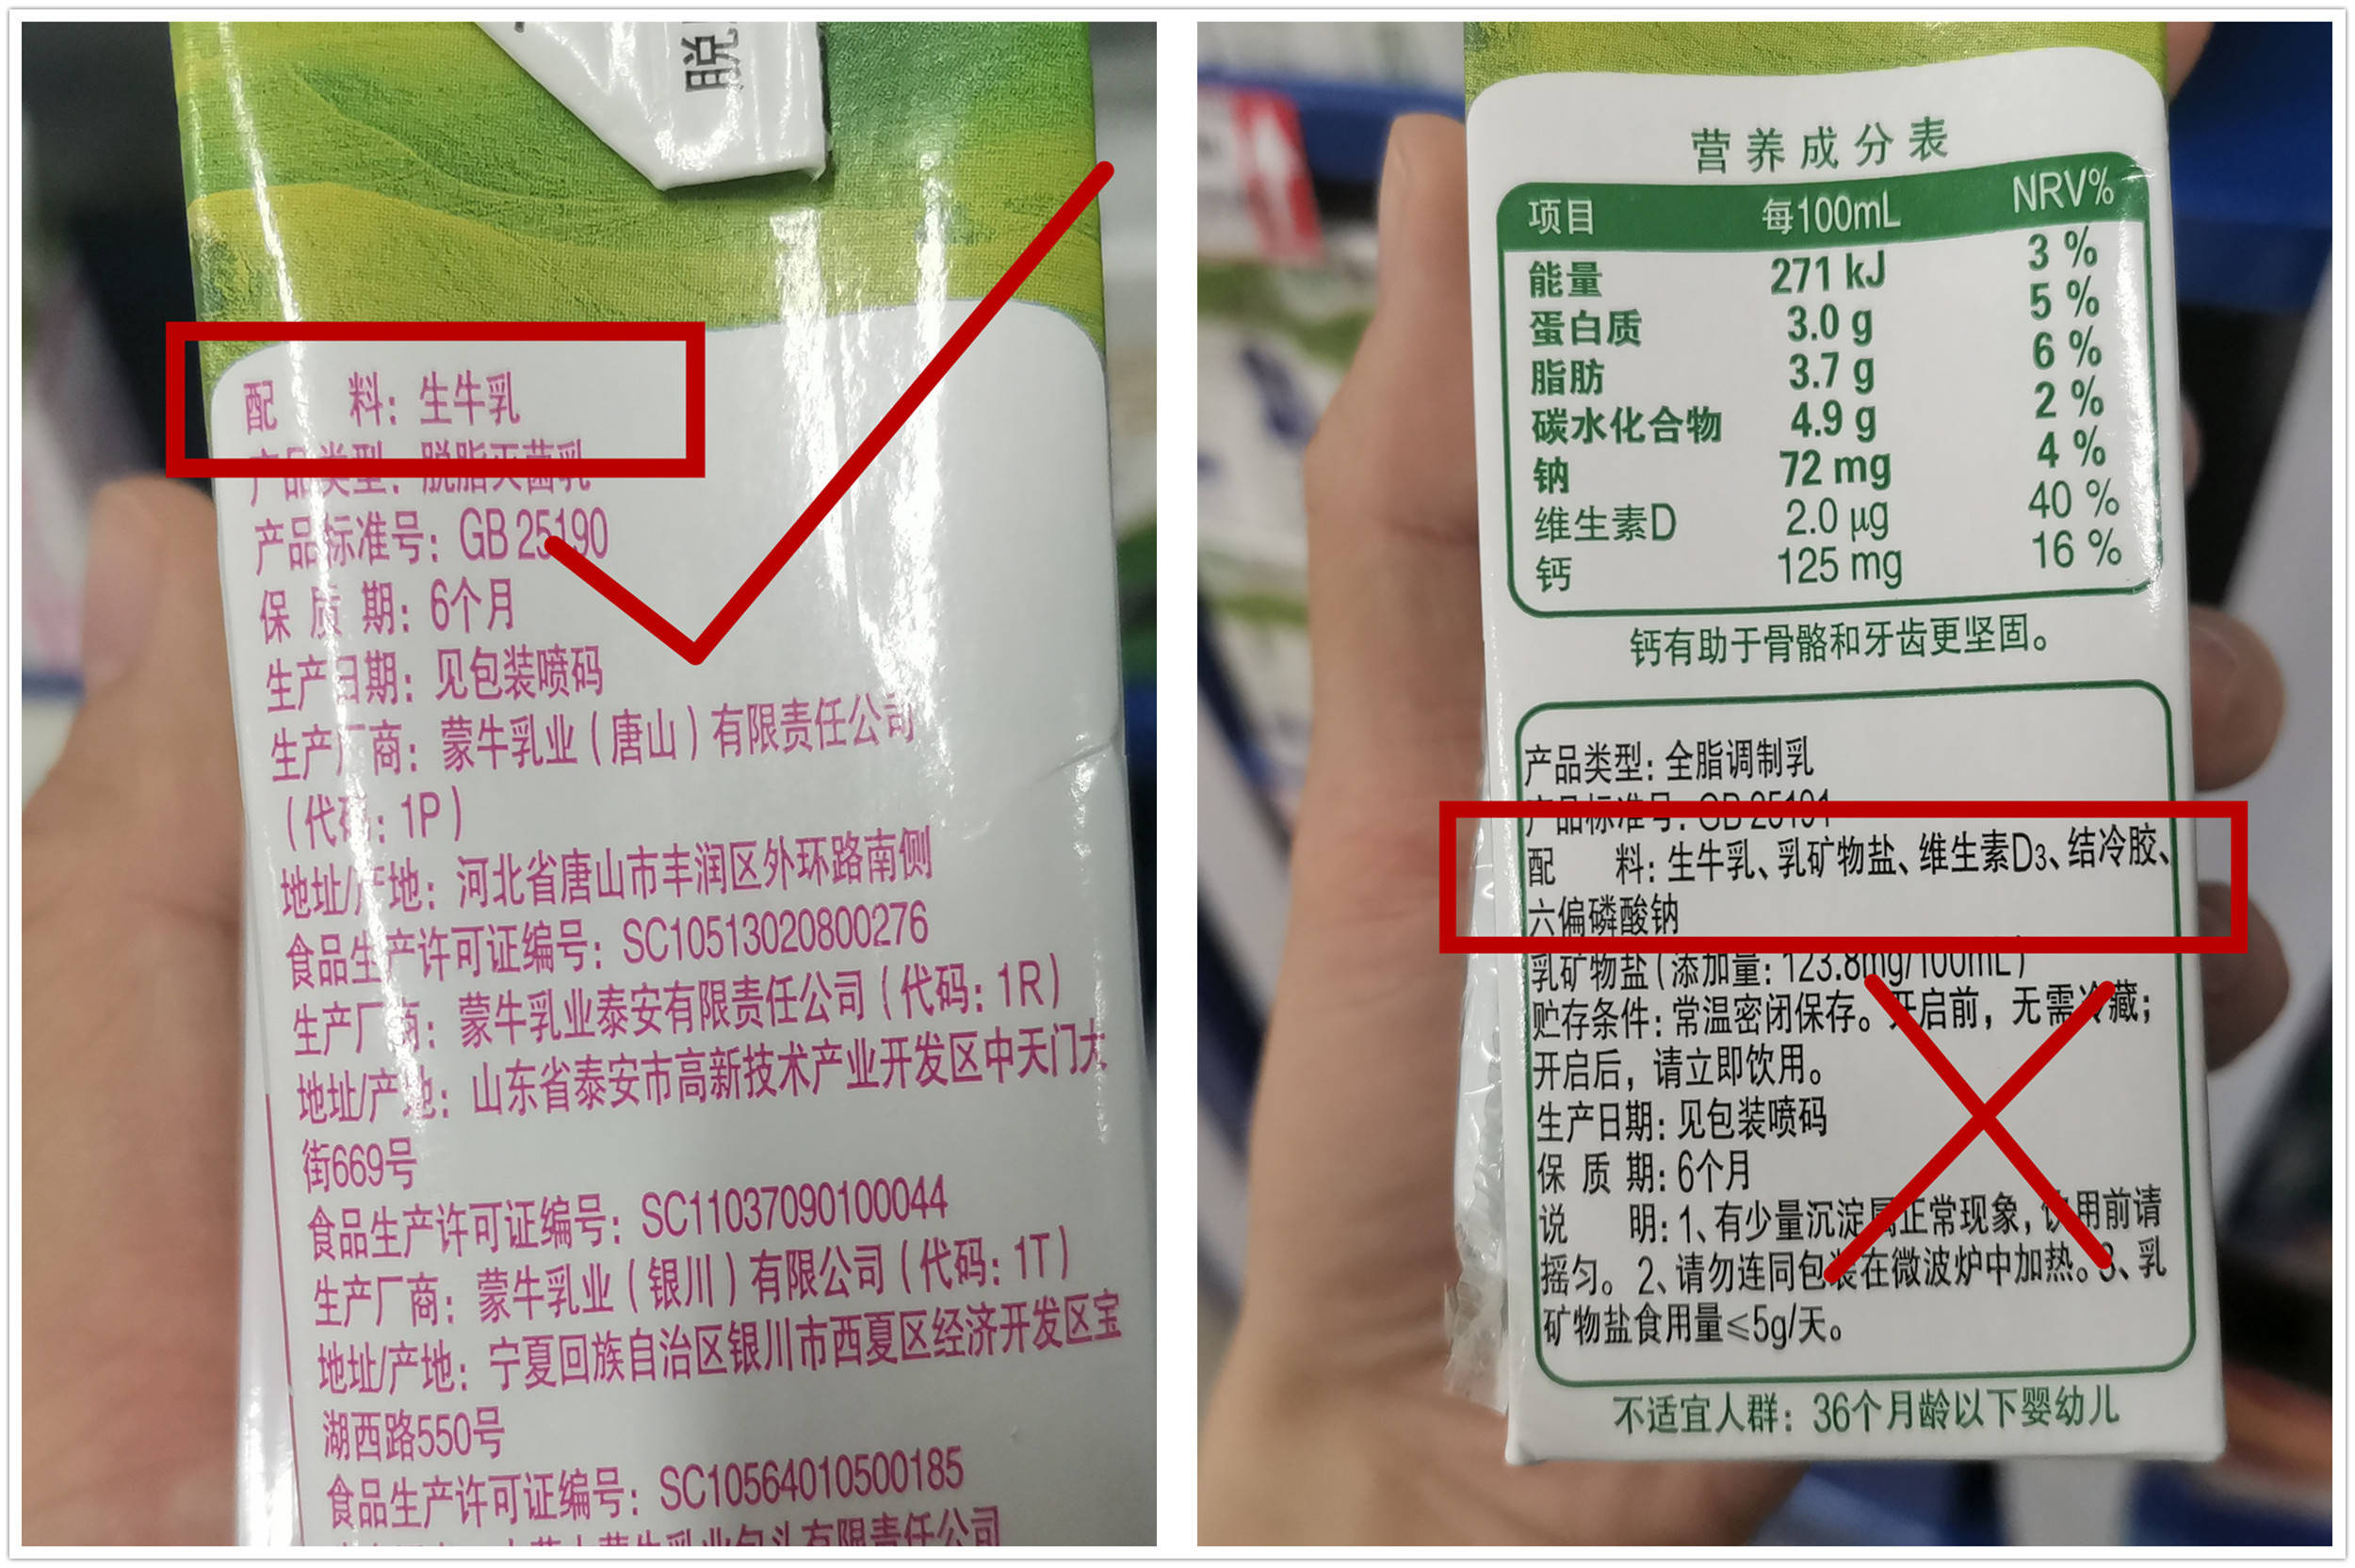 在配料表中都会有明确的标注,可以通过观察牛奶配料表来了解牛奶的